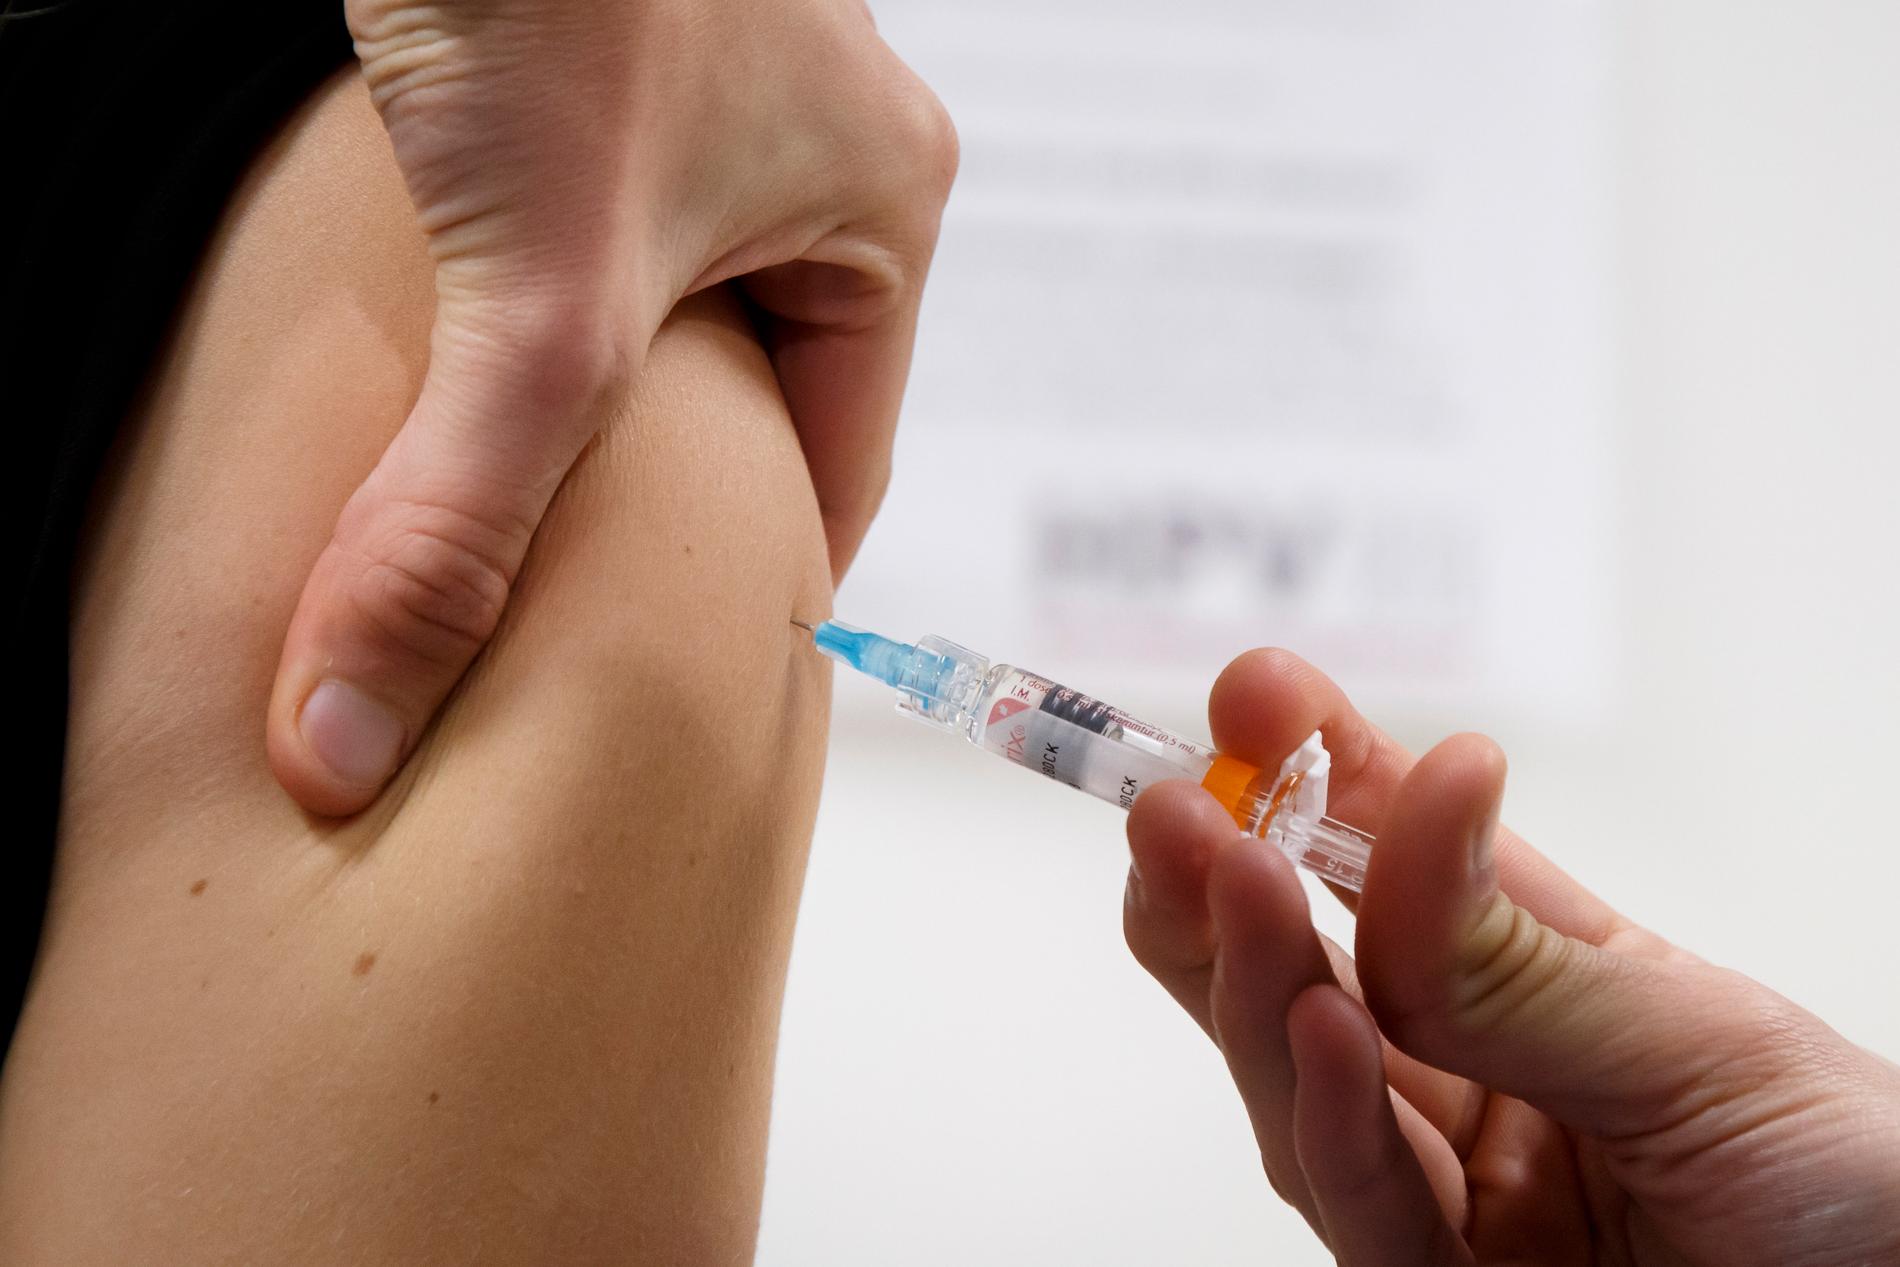 Folkhälsomyndigheten rekommenderar att även pojkar erbjuds HPV-vaccin via det nationella vaccinationsprogrammet. Arkivbild.